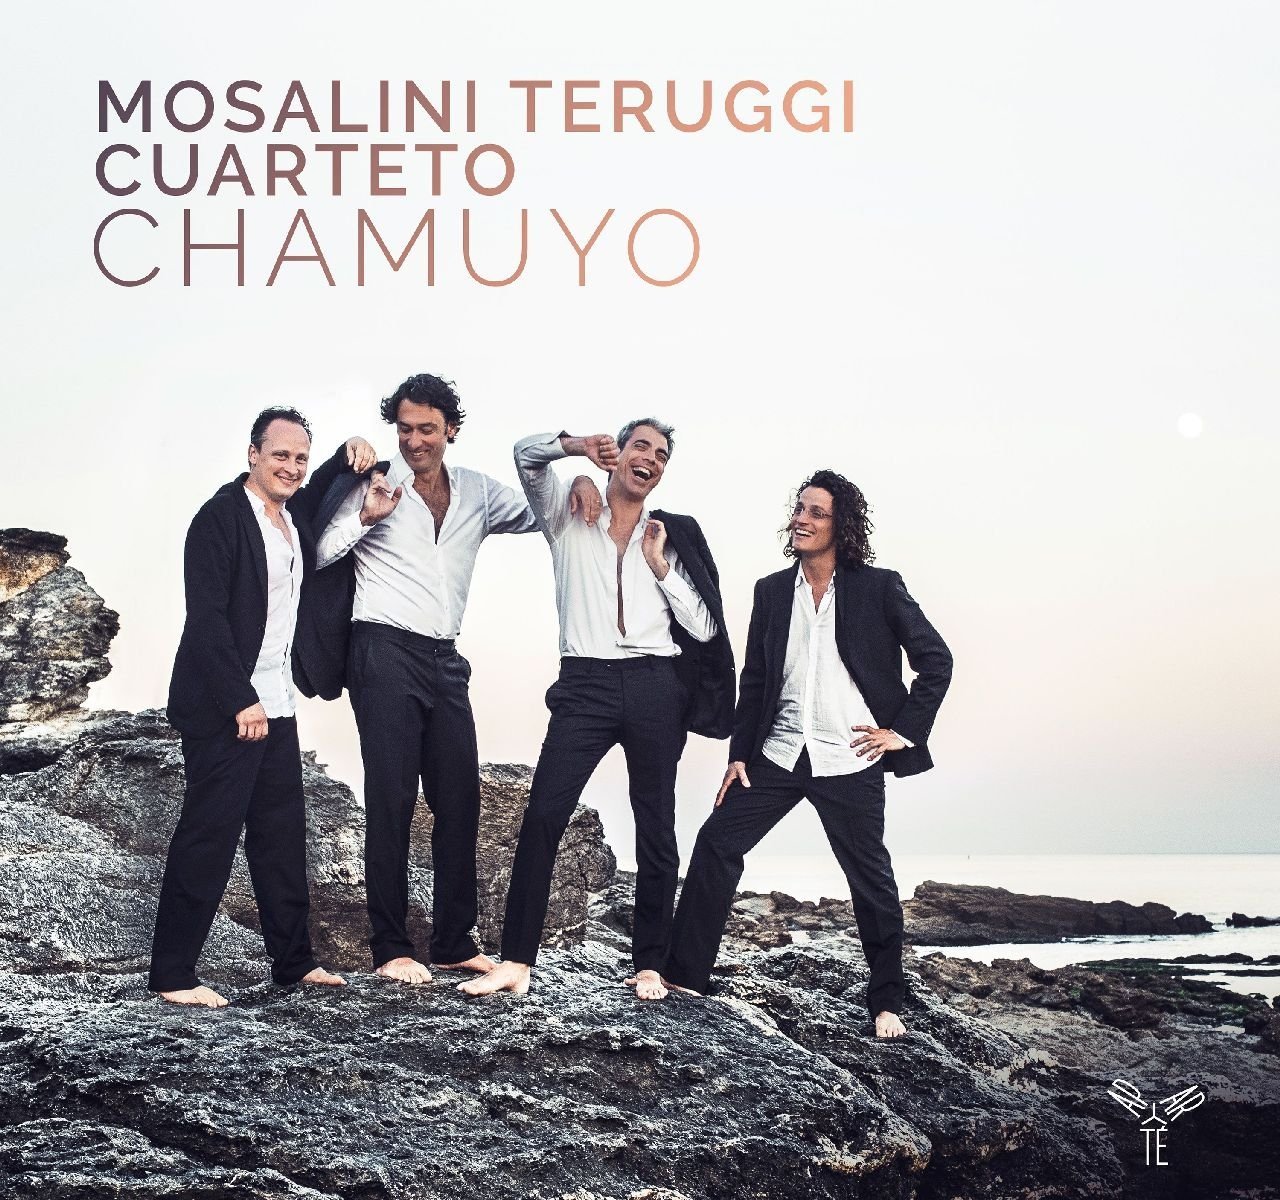 Mosalini Teruggi Cuarteto – Chamuyo (2017) [Qobuz FLAC 24bit/96kHz]